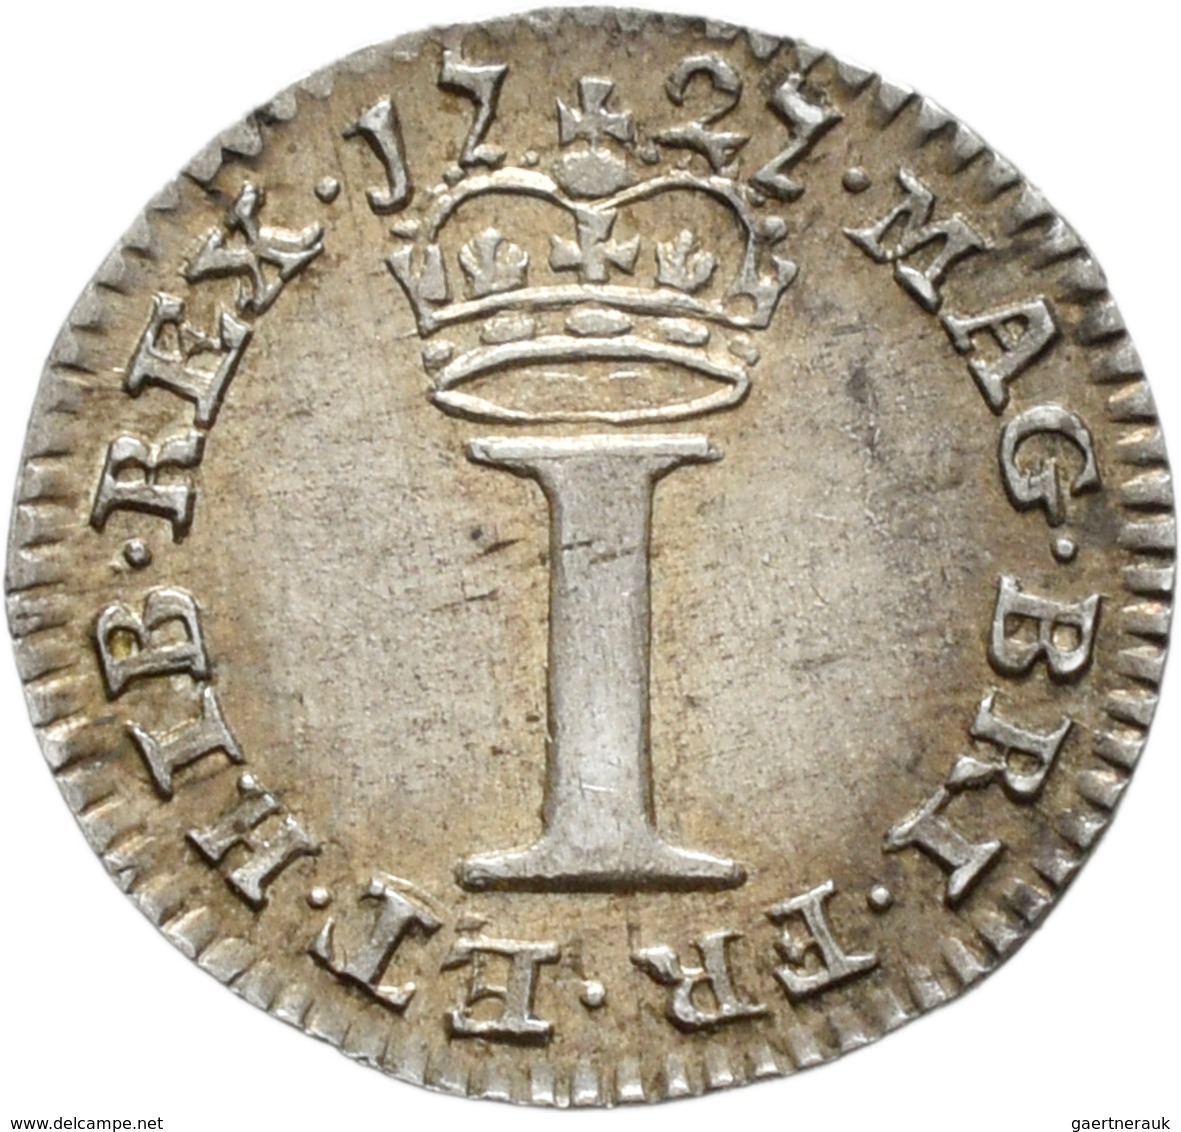 Großbritannien: Georg II. 1727-1760: Maundy Set 1,2,3,4 Pence 1727, sehr schön-vorzüglich.